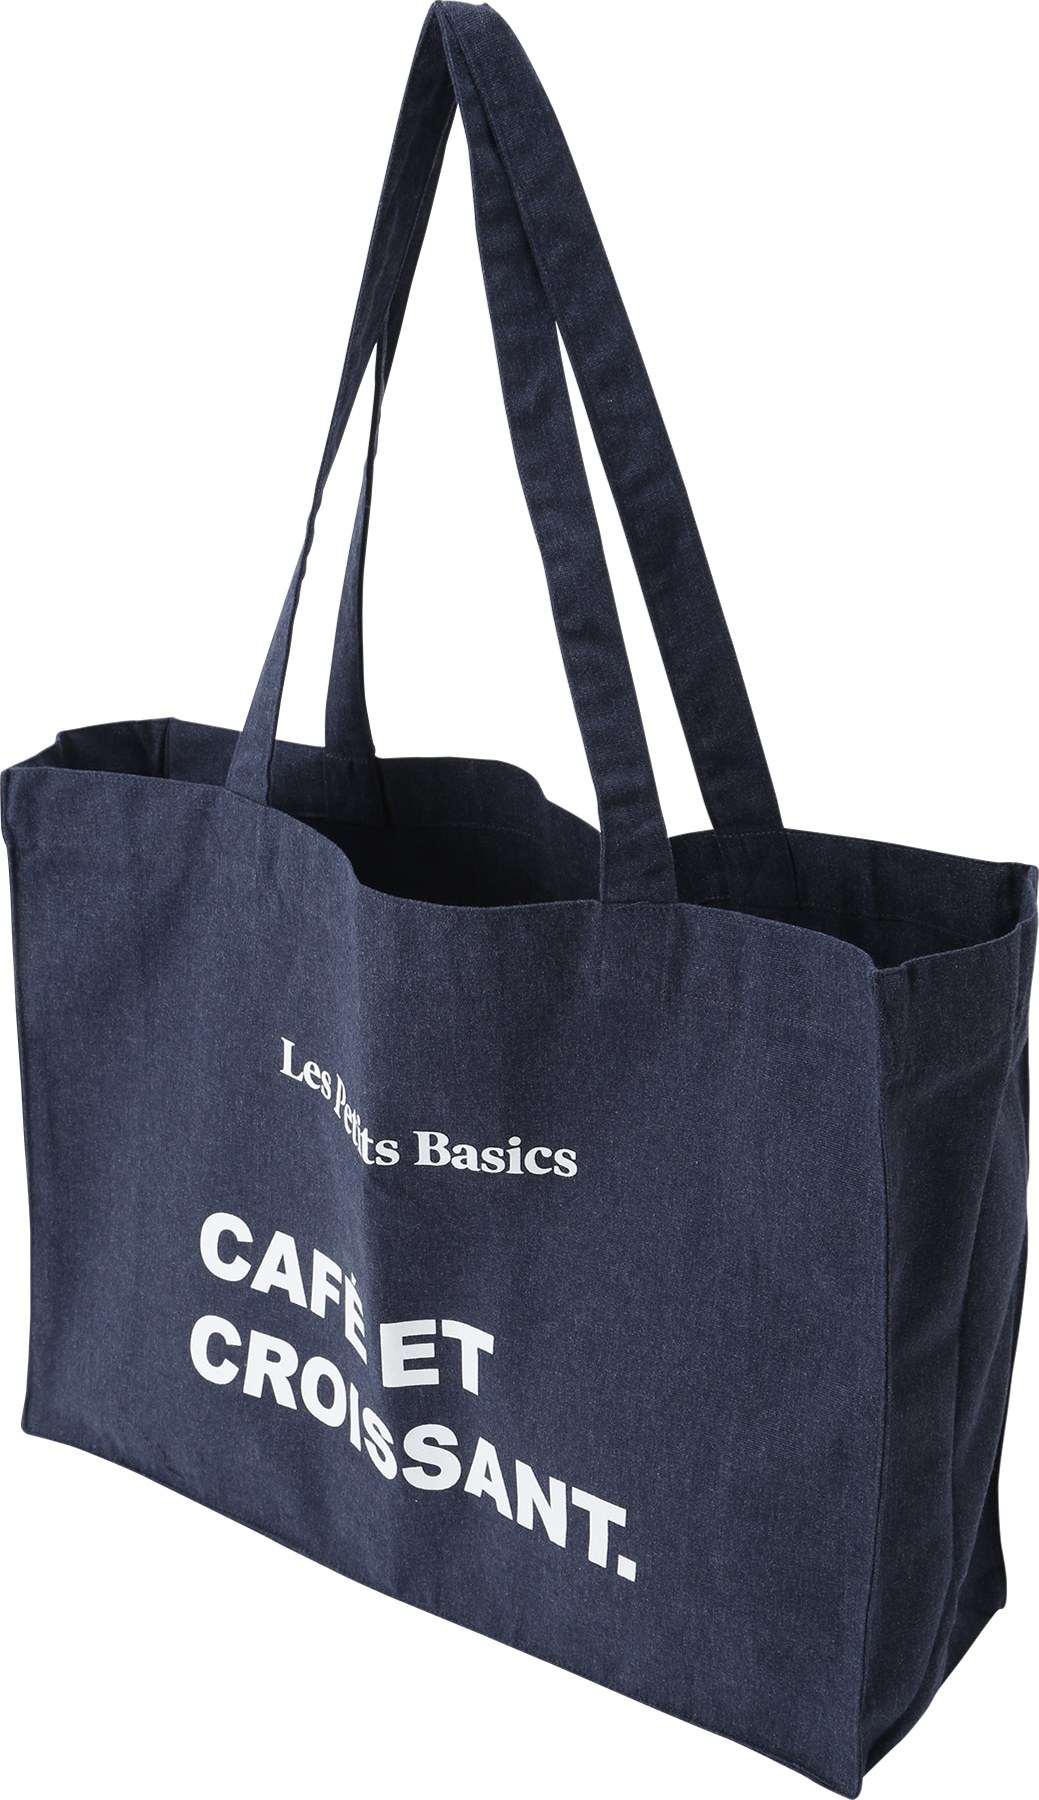 Les Petits Basics Nákupní taška tmavě modrá / bílá